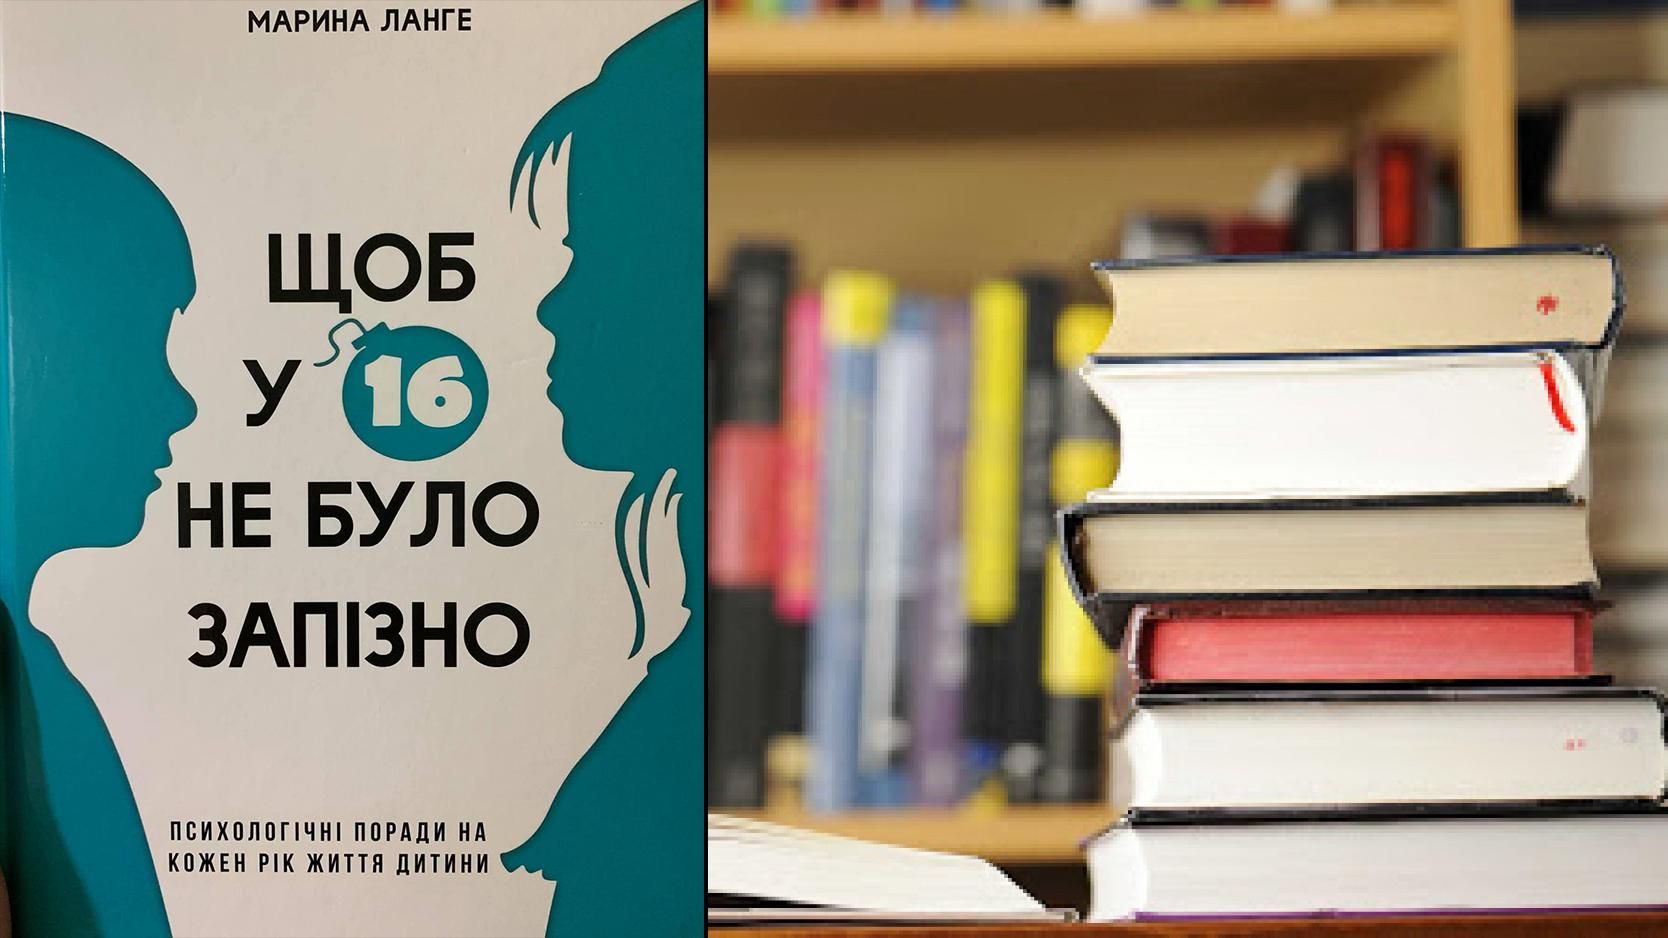 "150 сантиметров в юбке": в библиотеки закупят возмутительные книги о сексистском воспитании